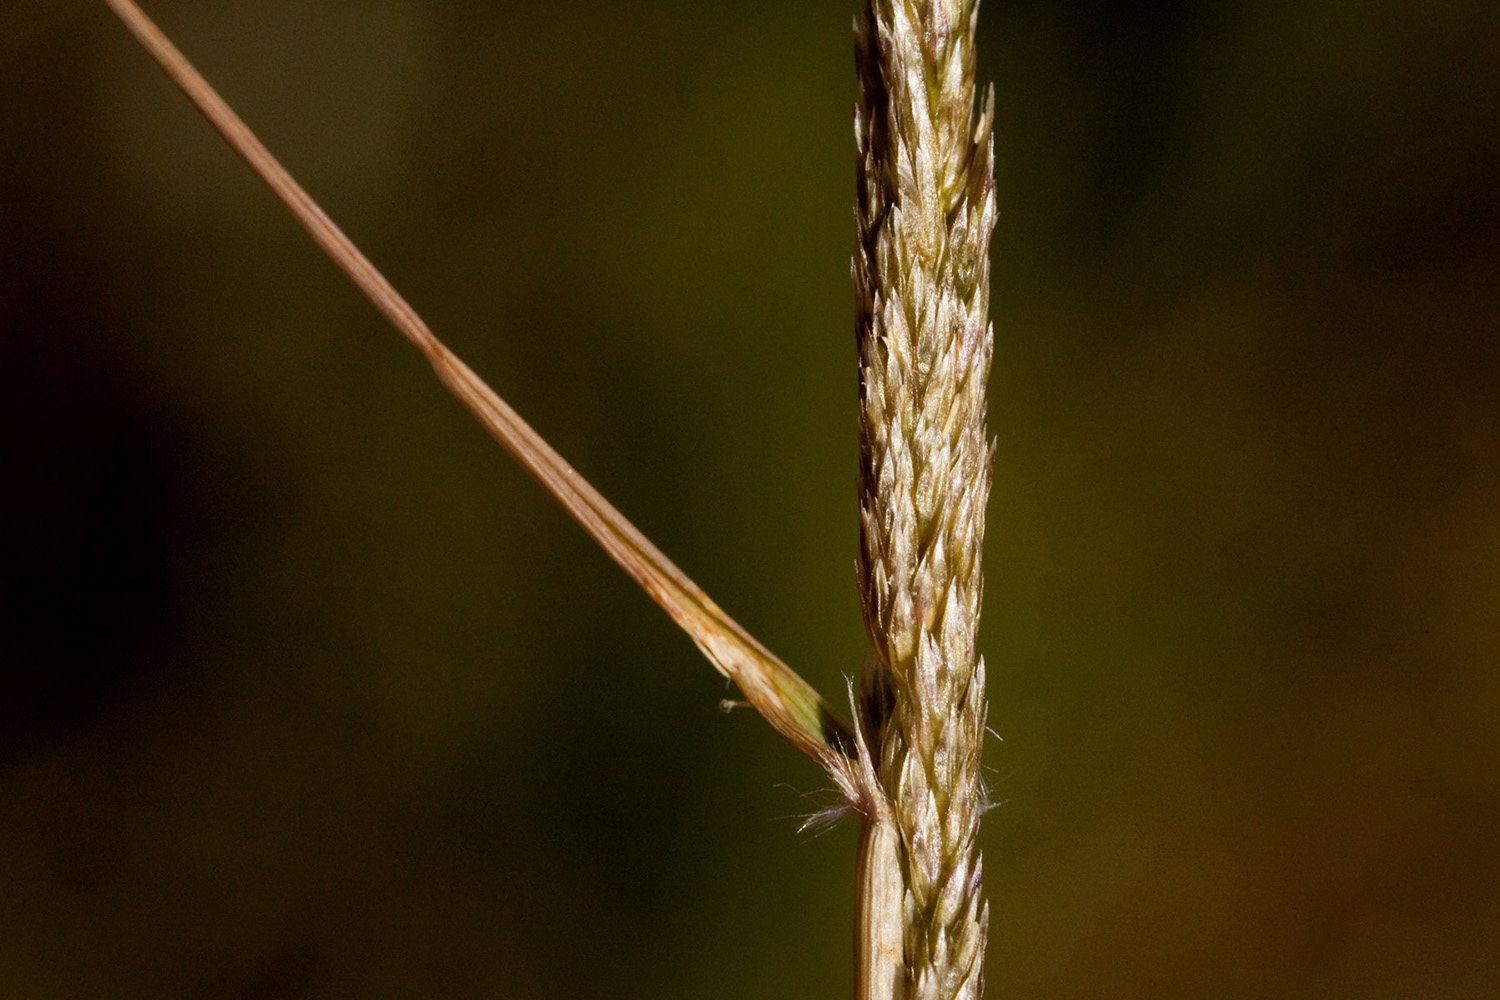 Leaf sheath alongside a seed spike